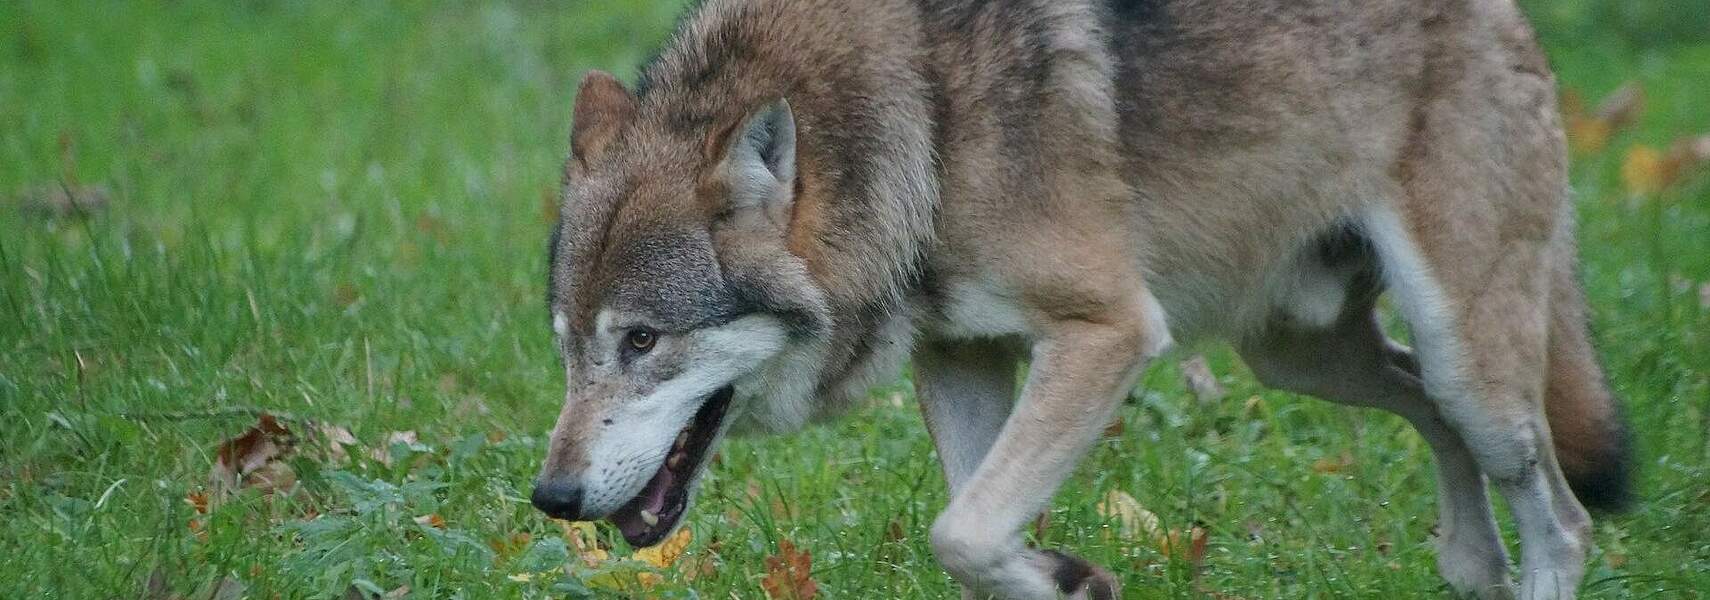 Wolfsattacken auf Haustiere: DBV und DJV fordern Rechtssicherheit